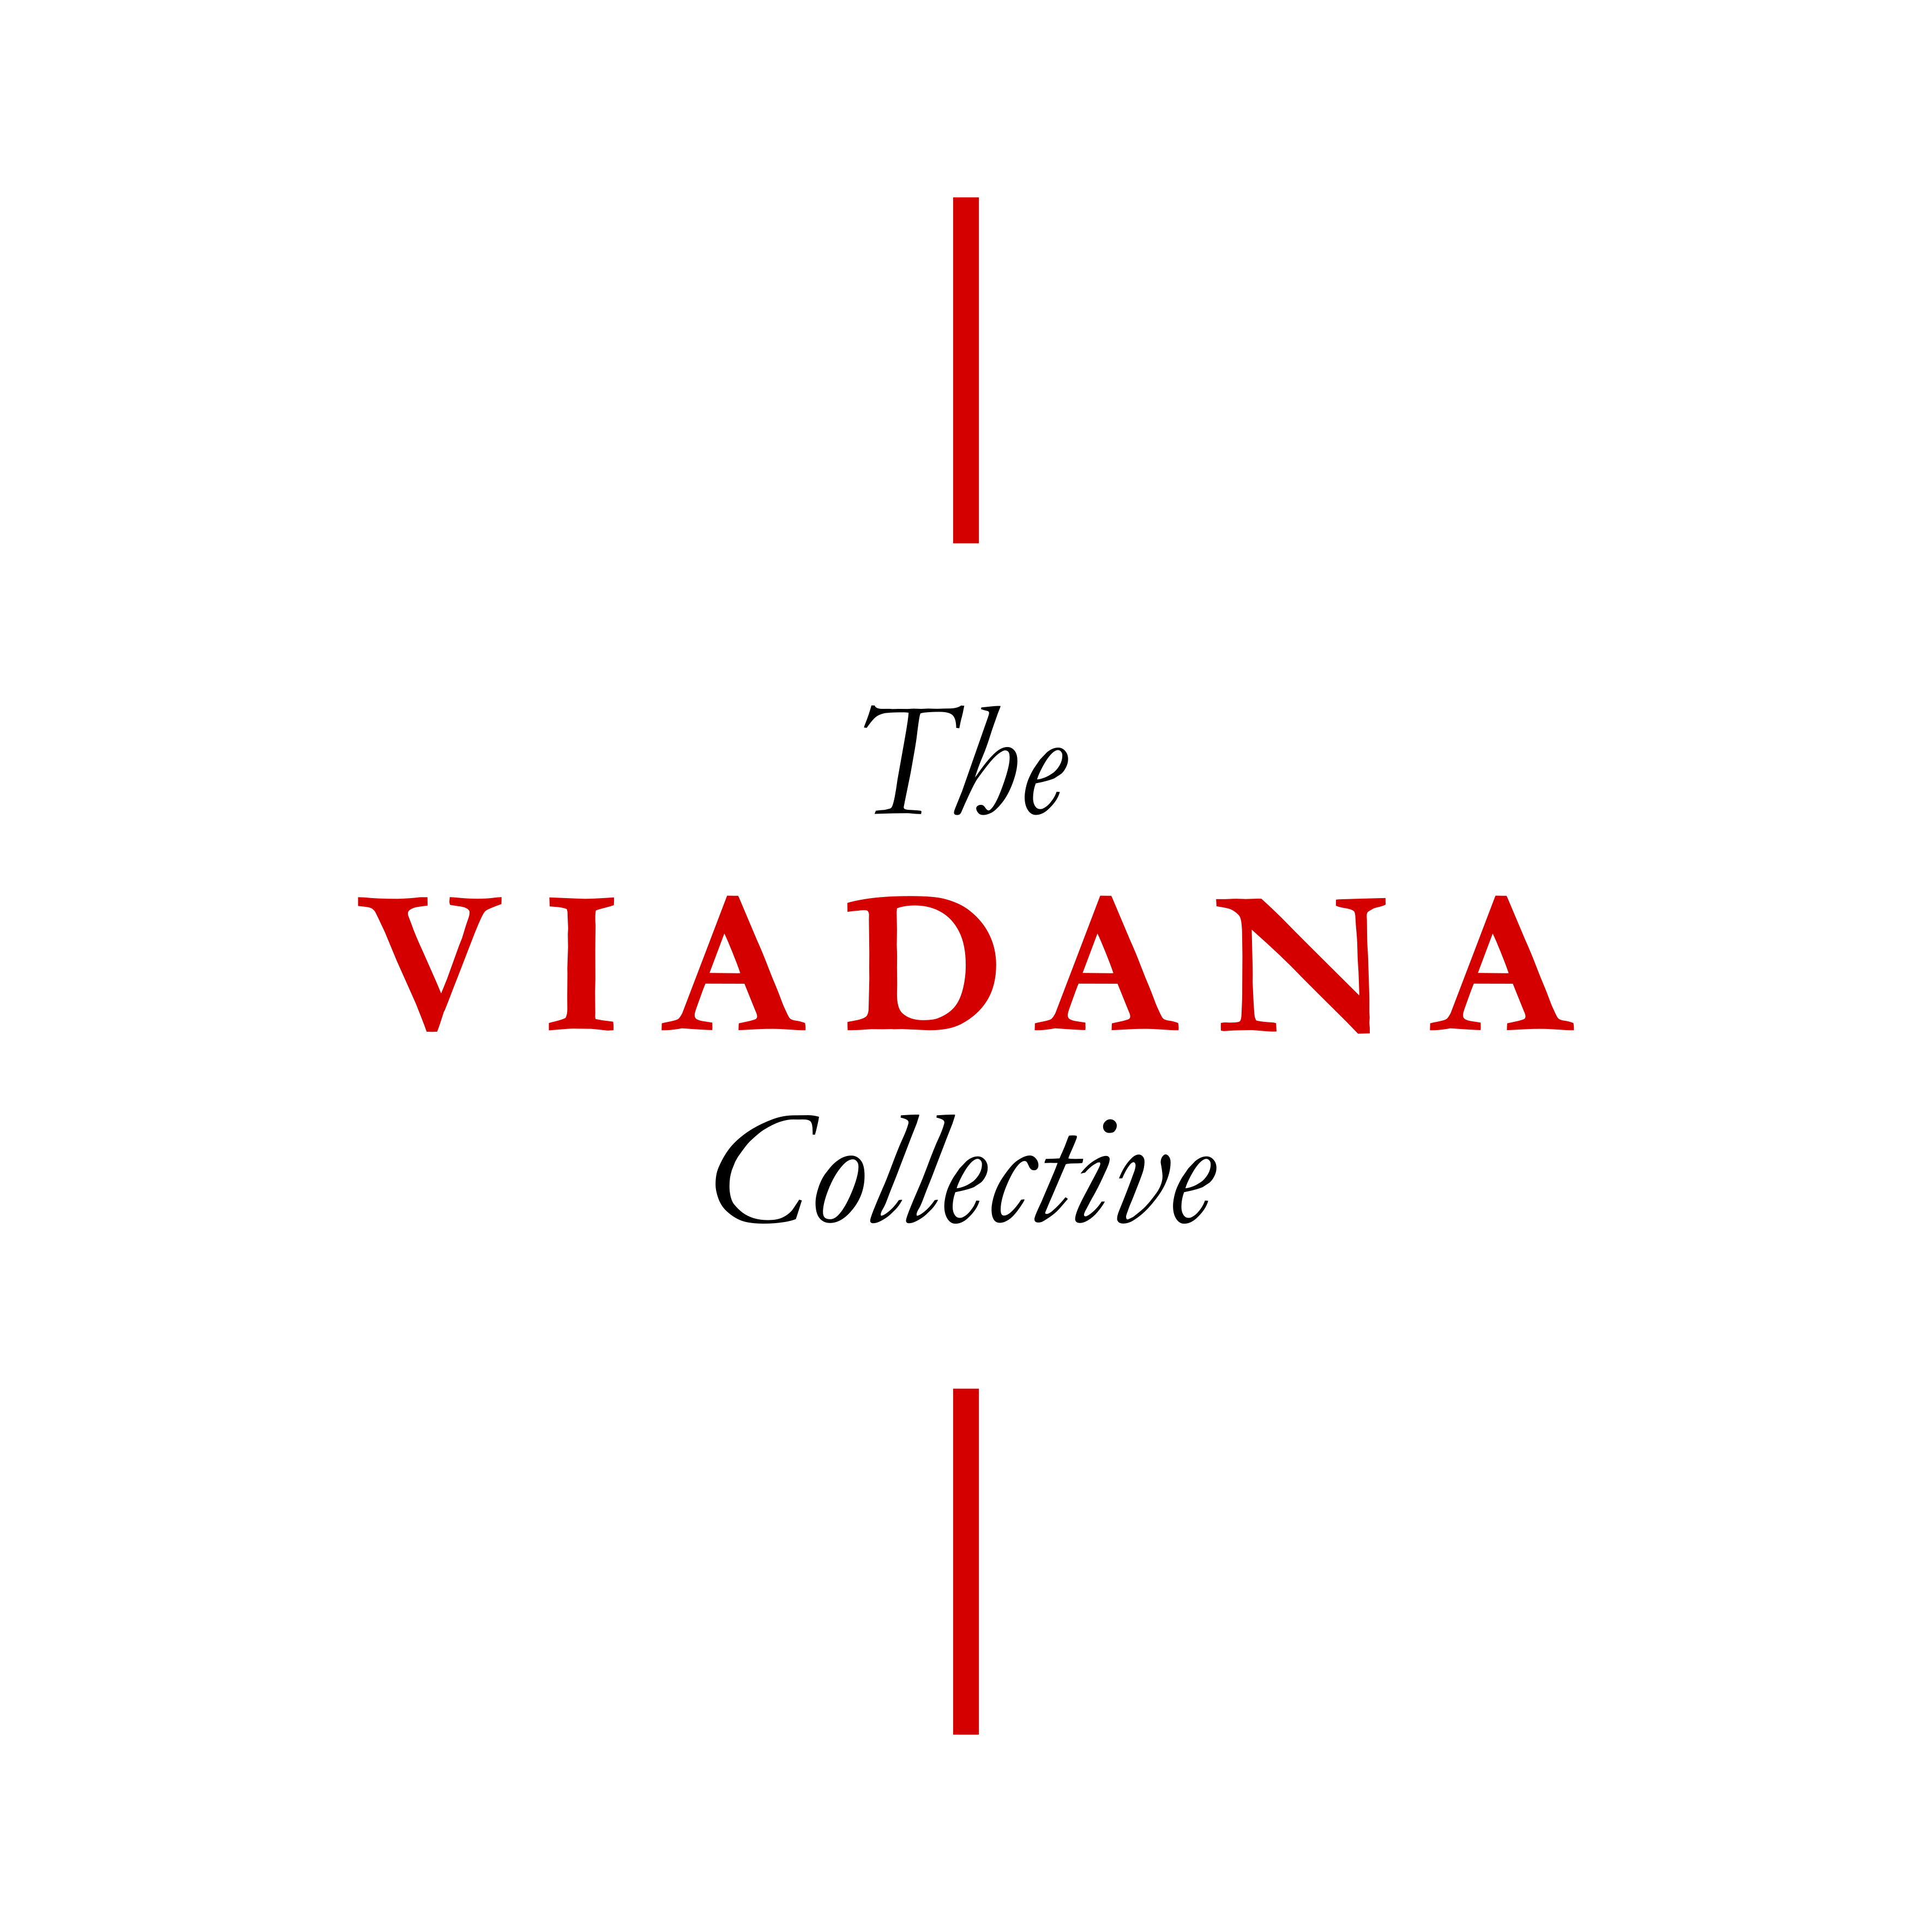 The Viadana Collective